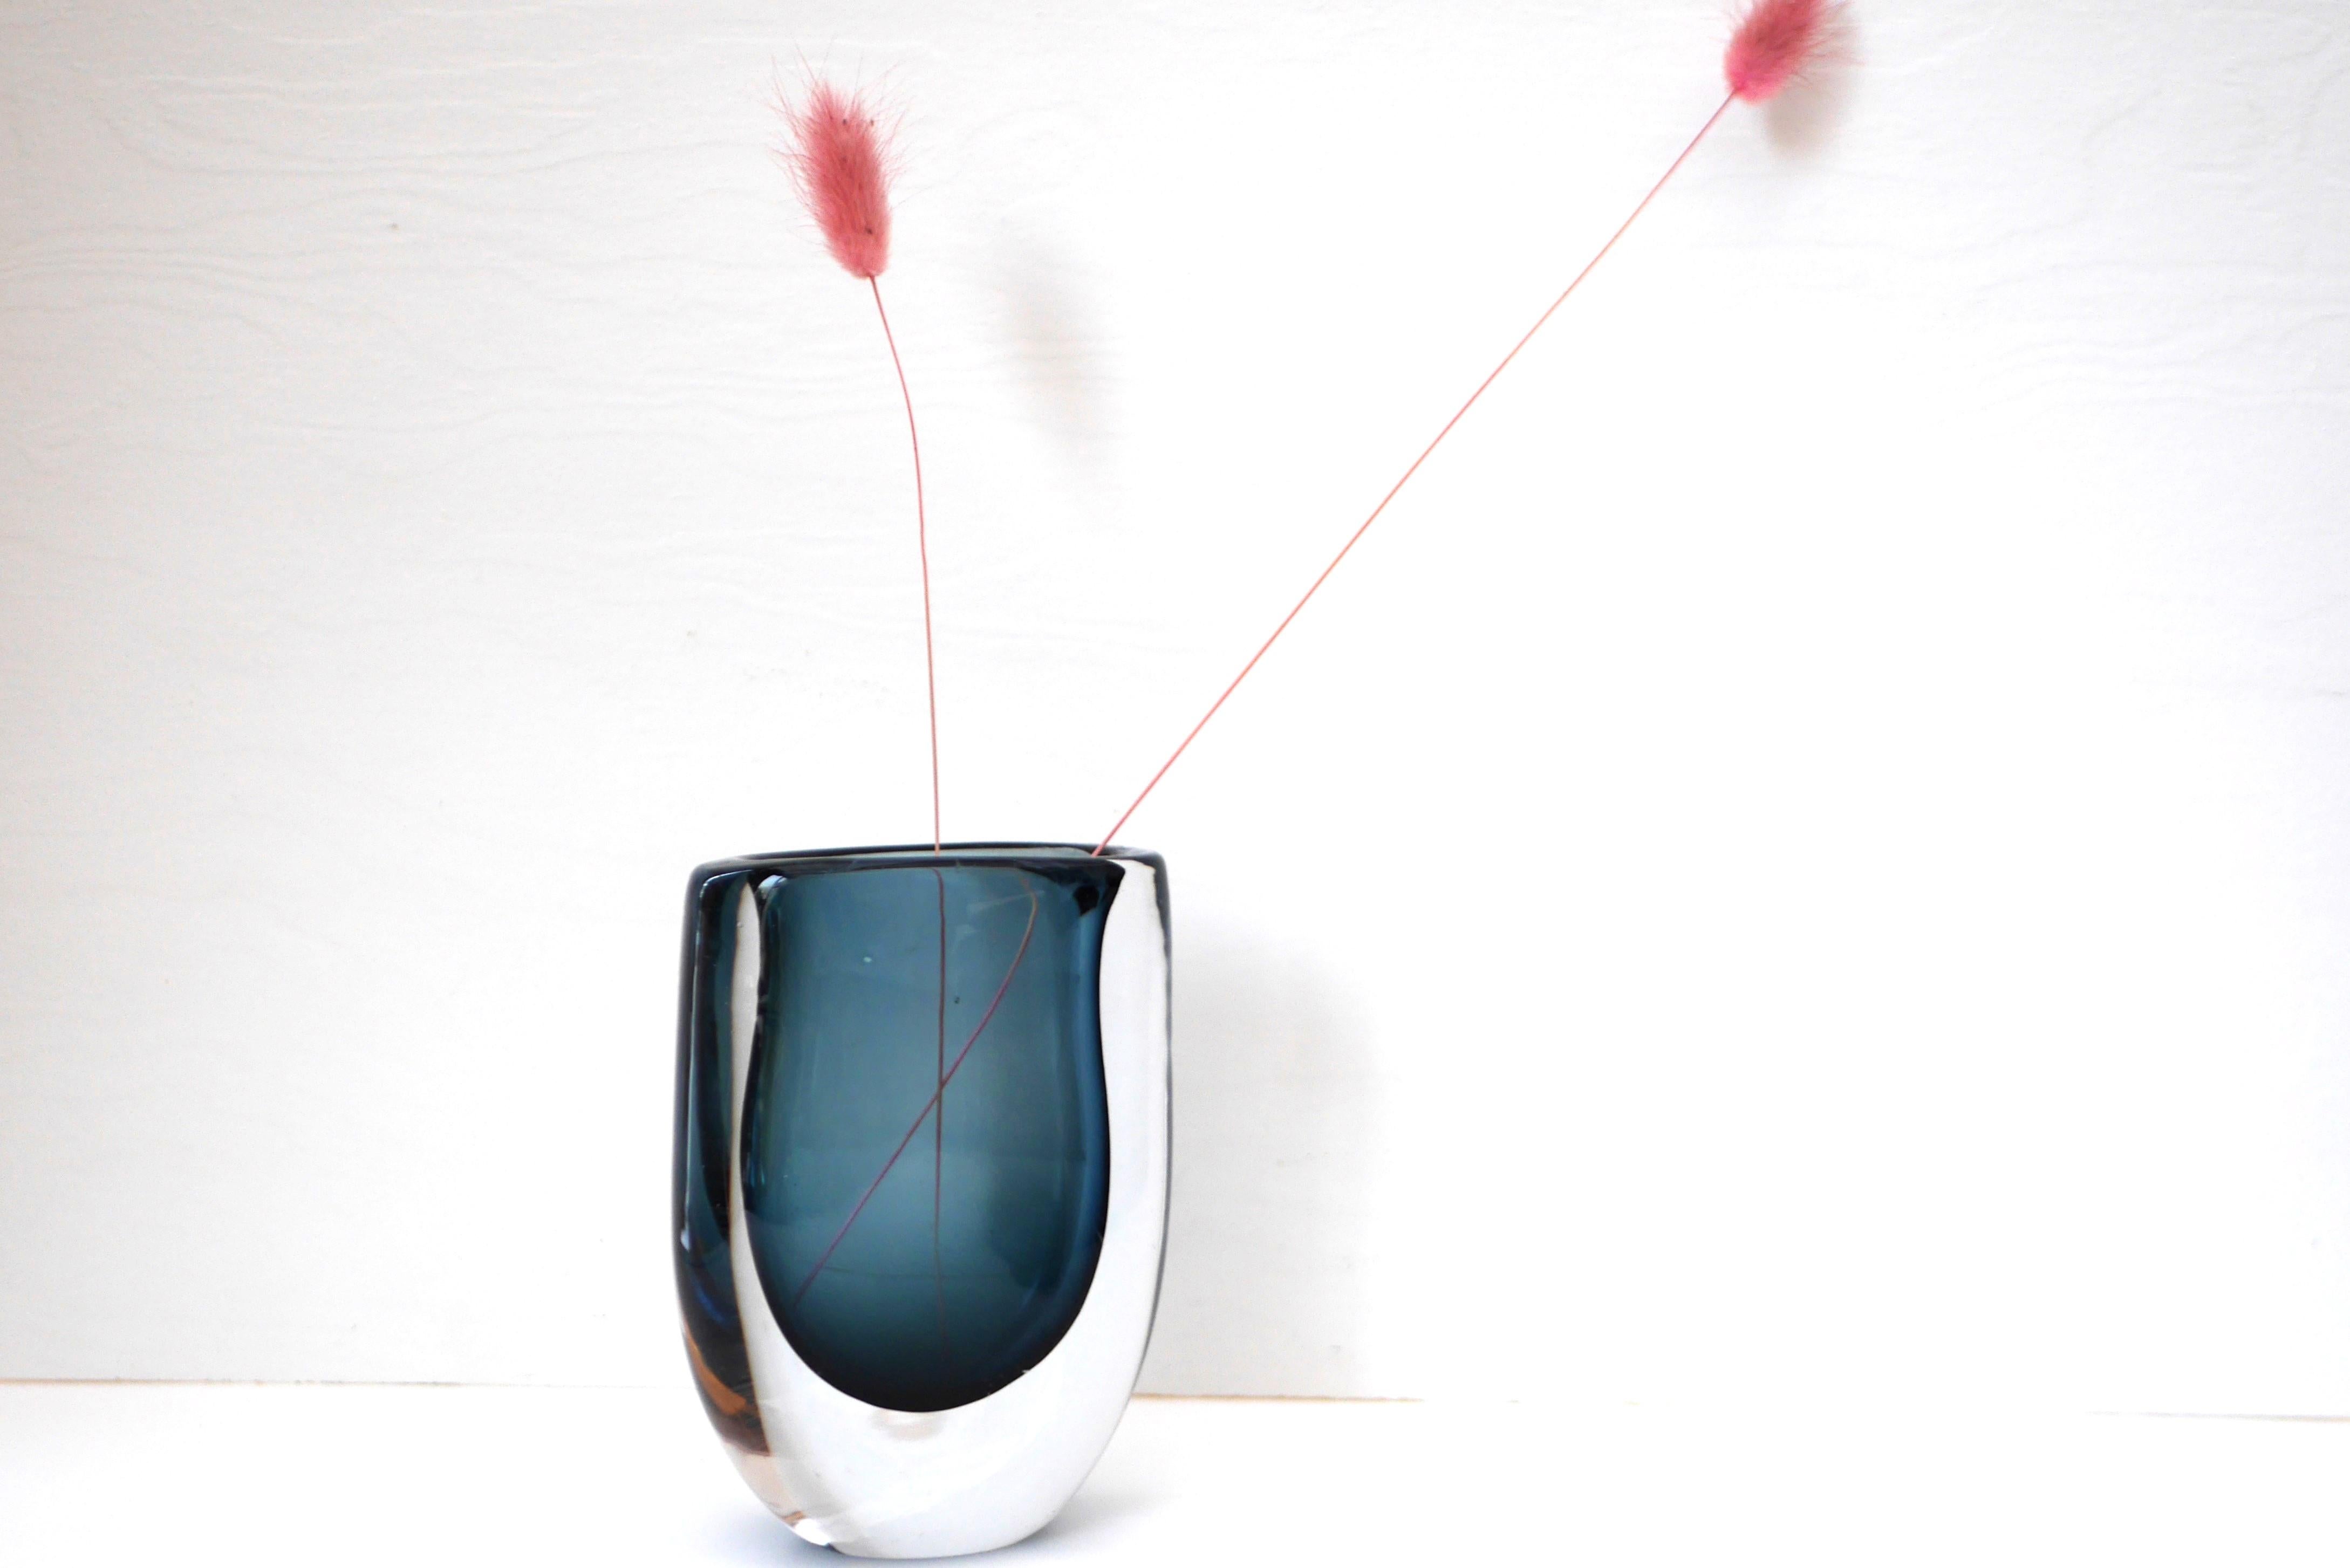 Un extraordinaire vase en verre vintage signé, soufflé à la main, réalisé par Vicke Lindstrand pour Kosta, Suède. La forme de ce vase est fantastique, simple et élégante, avec une couleur bleue fantastique, imbriquée dans du cristal de verre clair